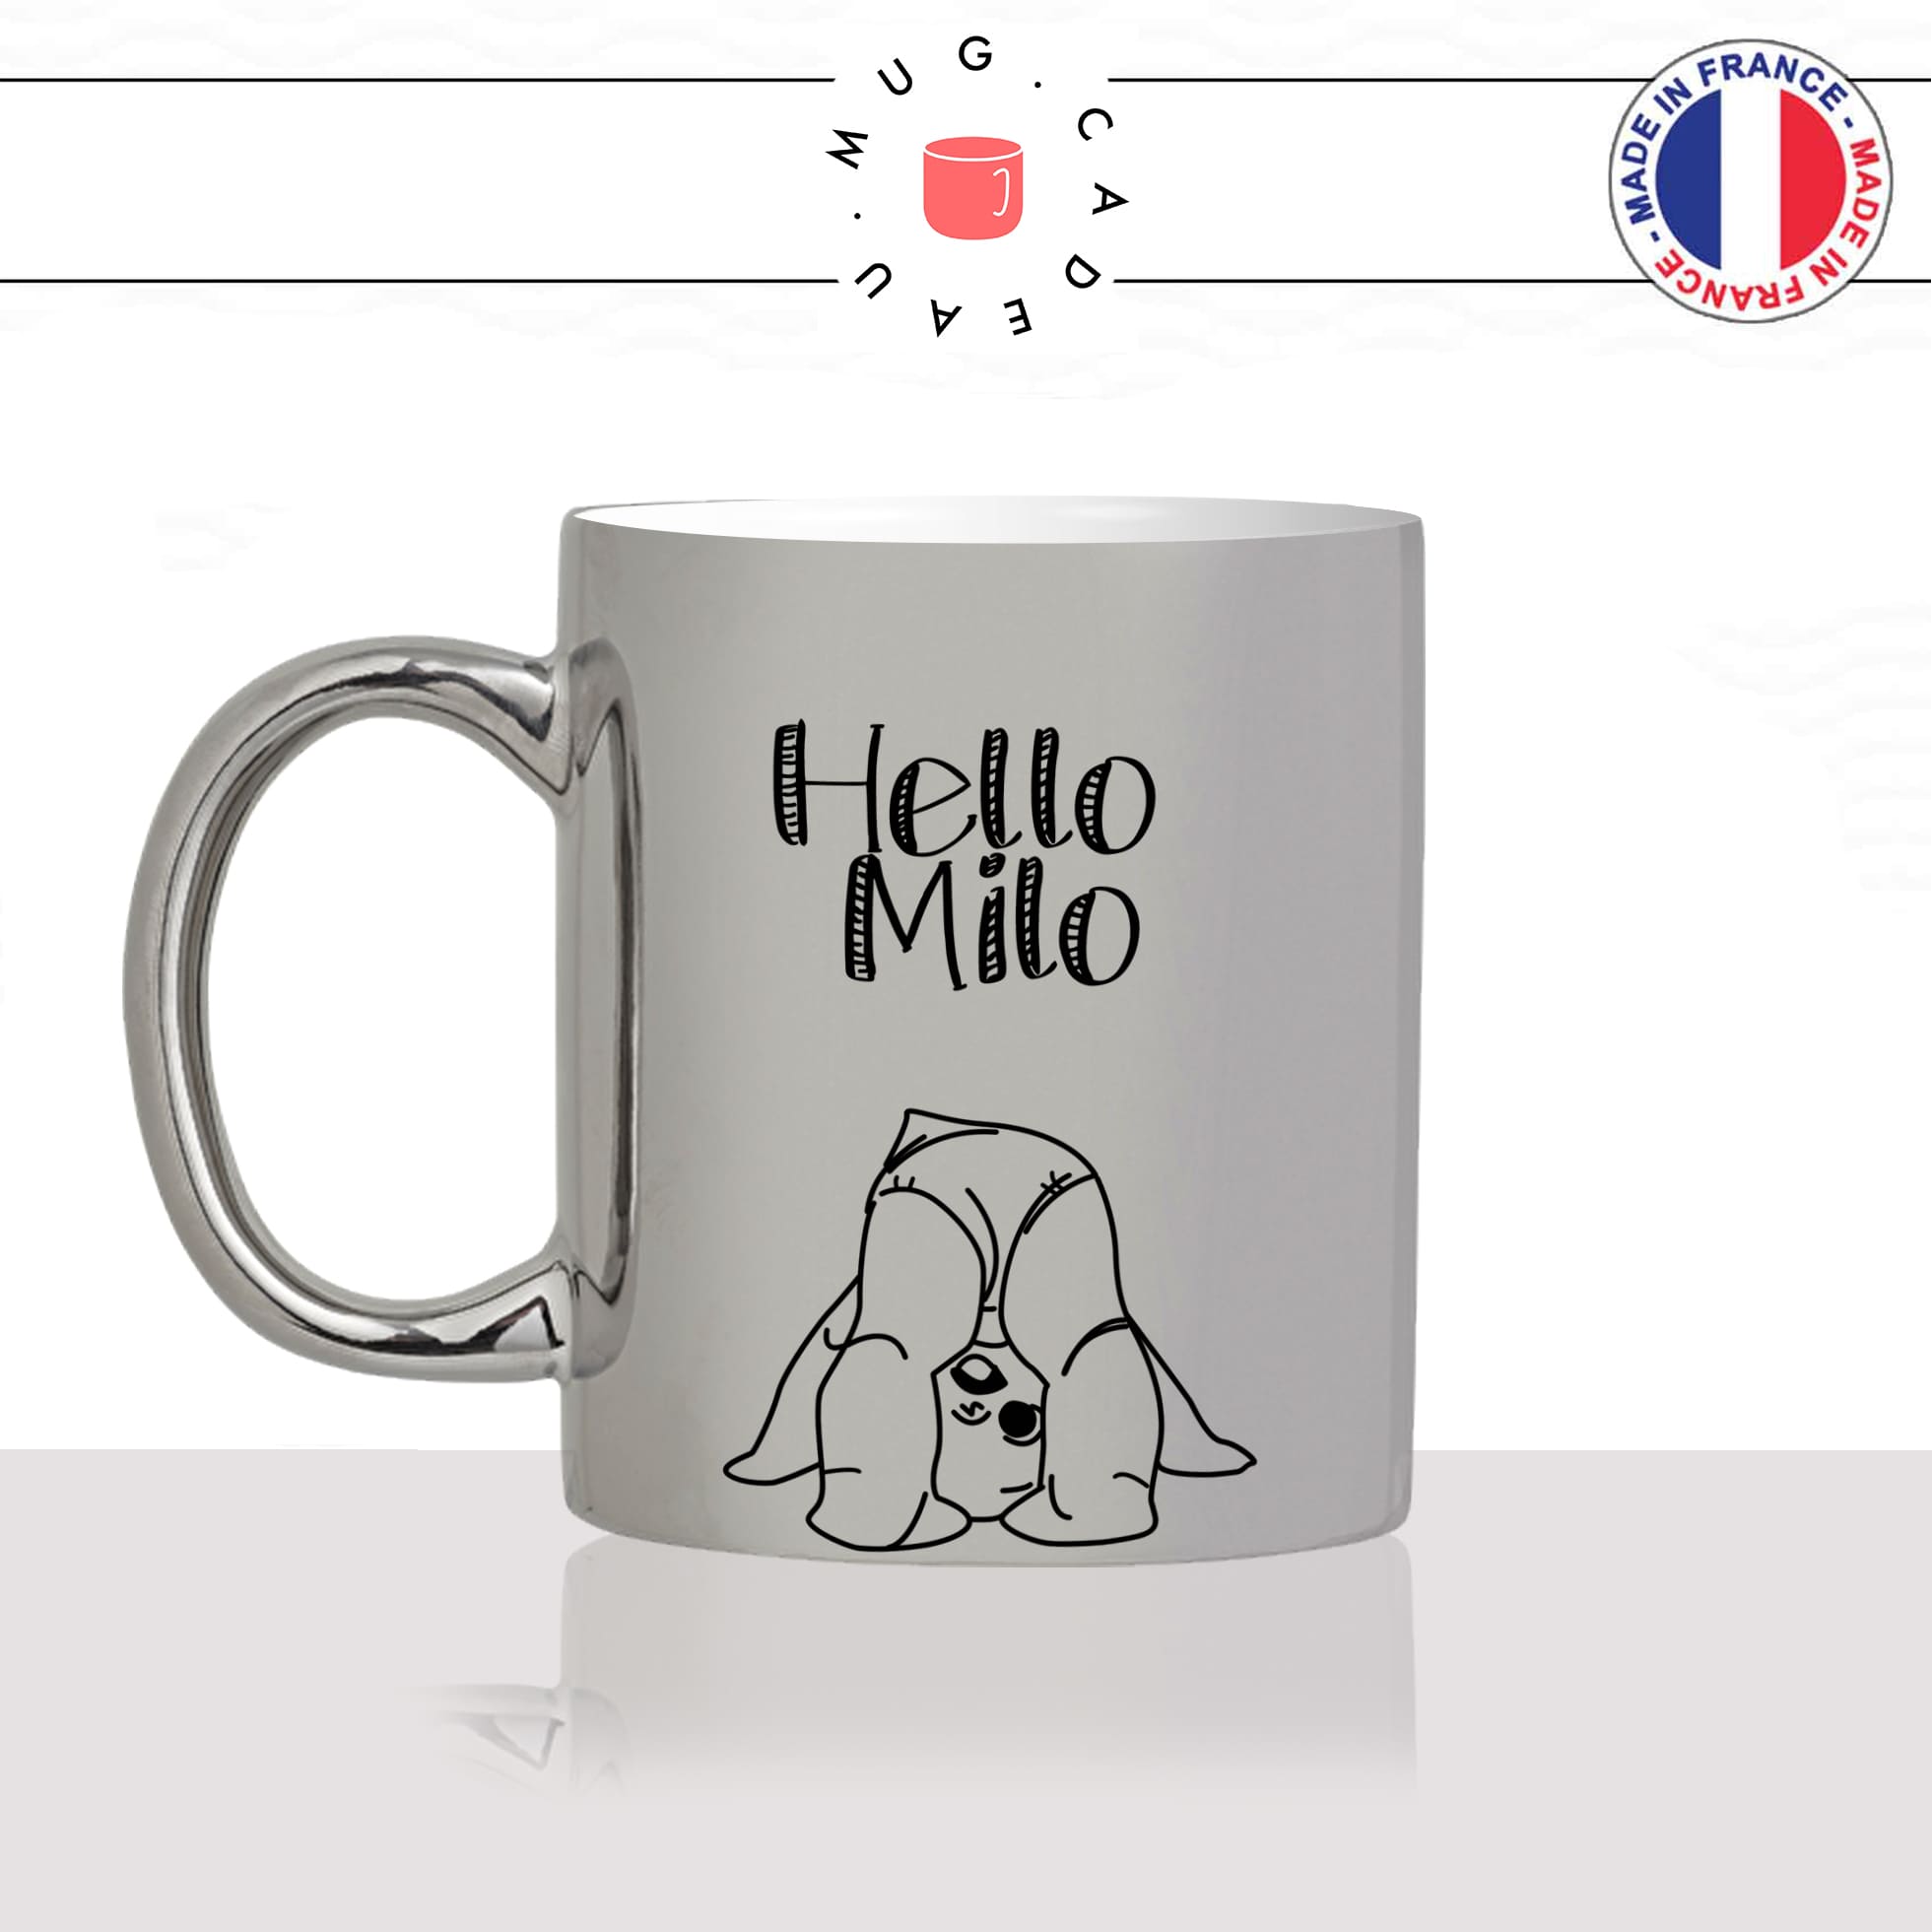 mug-tasse-argent-argenté-silver-naissance-nouveau-né-bébé-hello-prenom-personnalisable-original-idée-cadeau-fun-cool-café-thé